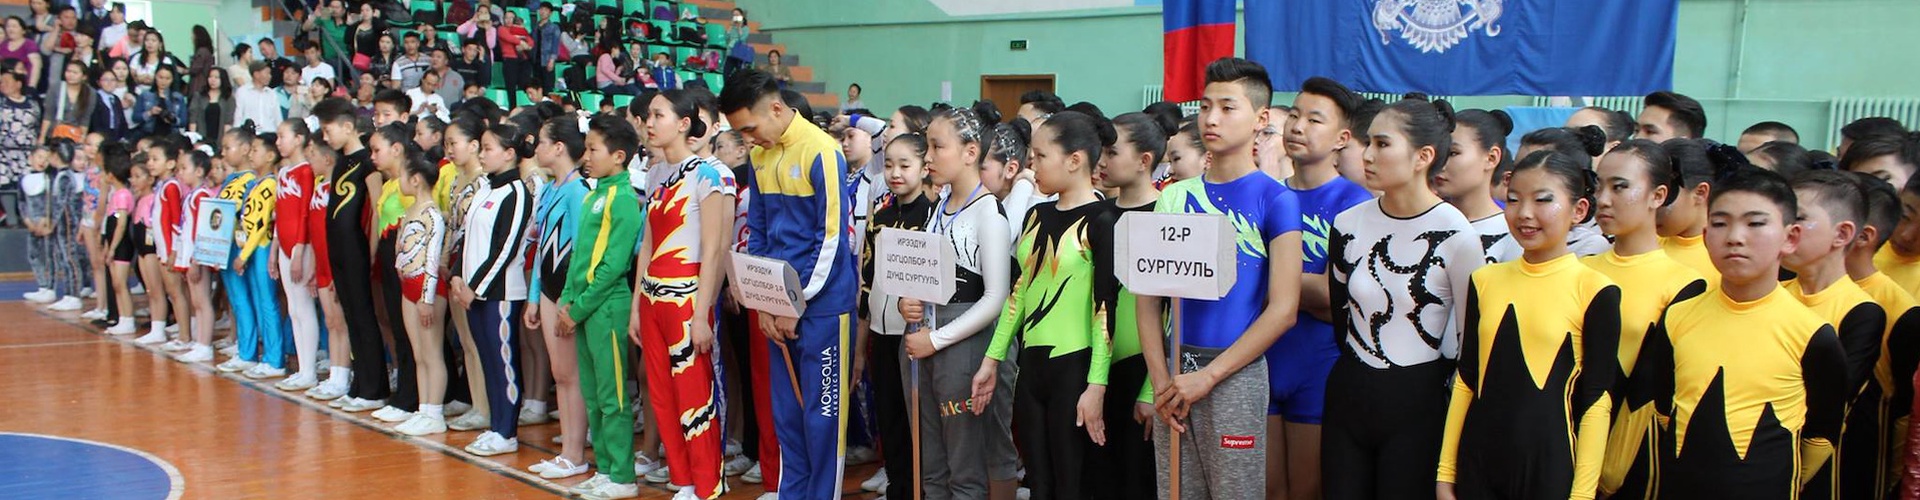 Улаанбаатар хотын 2017 оны аварга шалгаруулах Ерөнхий боловсролын сургуулийн сурагчдын уран хөдөлгөөнт гимнастикийн тэмцээн